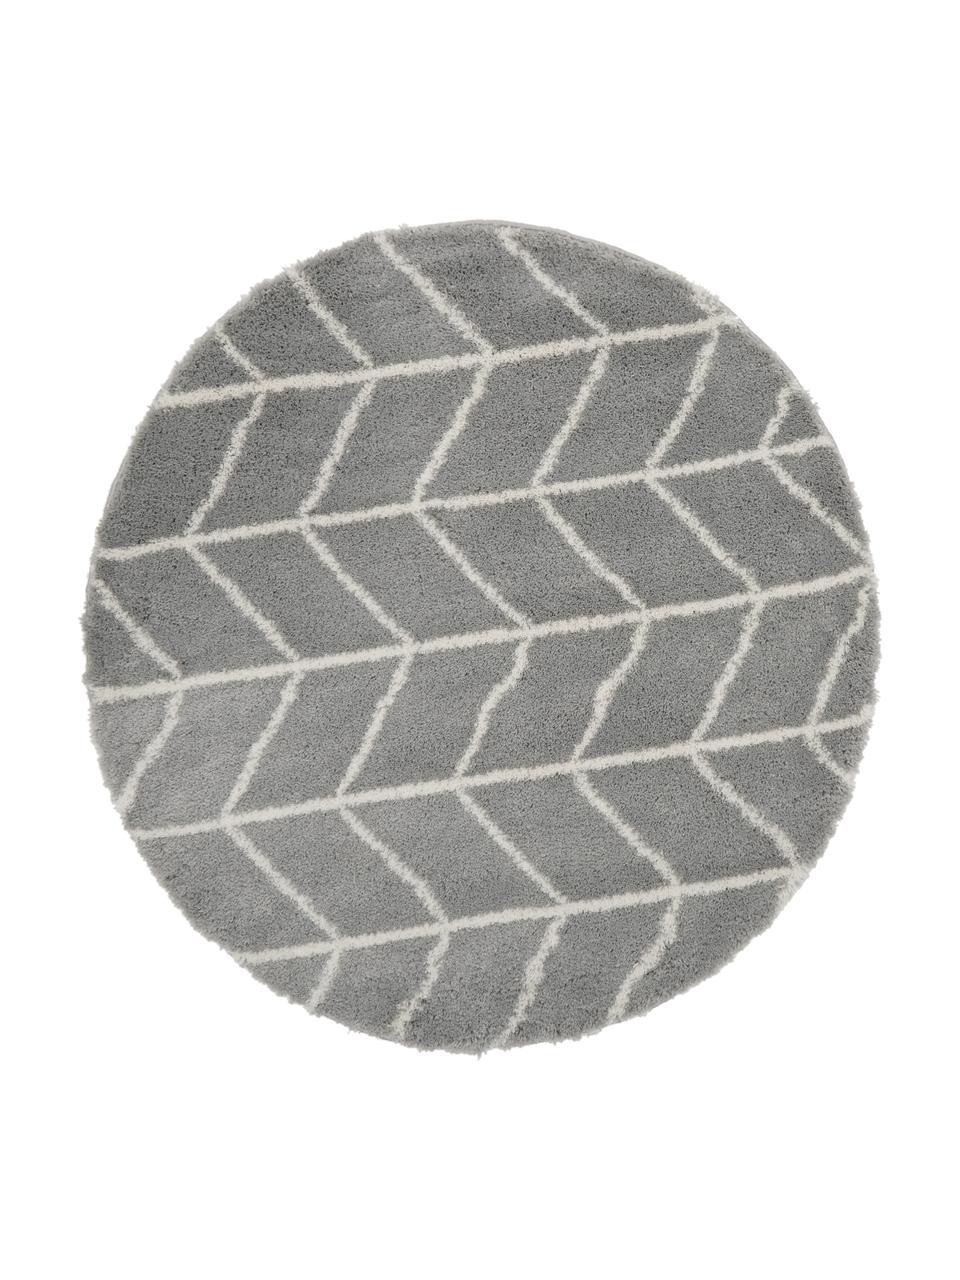 Runder Hochflor-Teppich Cera in Grau/Creme, Flor: 100% Polypropylen, Grau, Cremeweiss, Ø 150 cm (Grösse M)